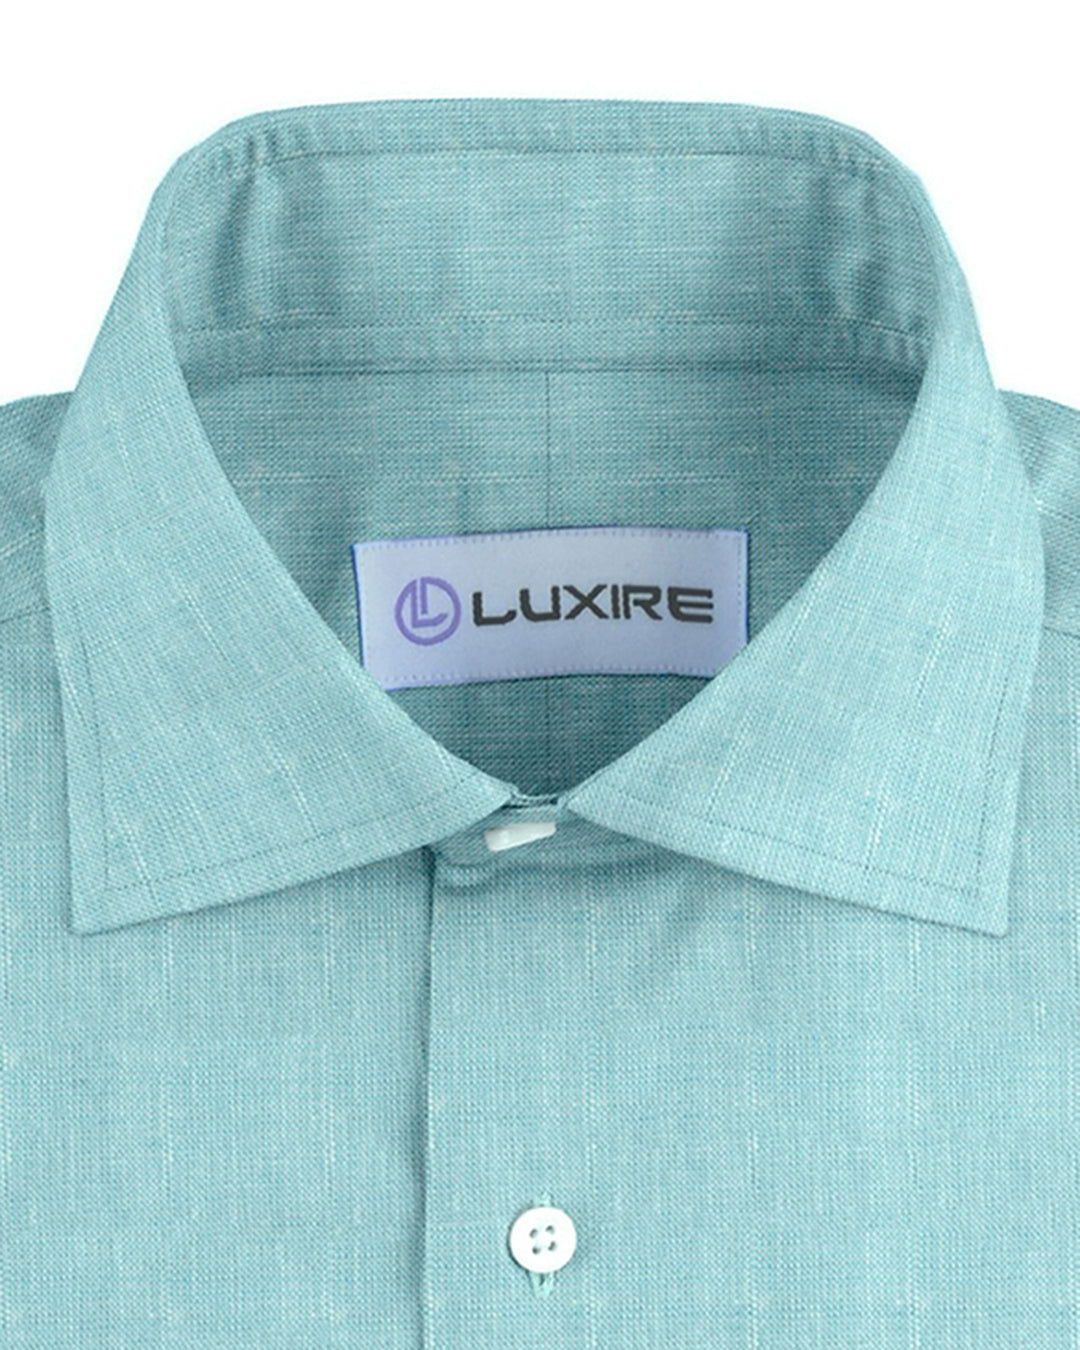 Collar of custom linen shirt for men in light blue